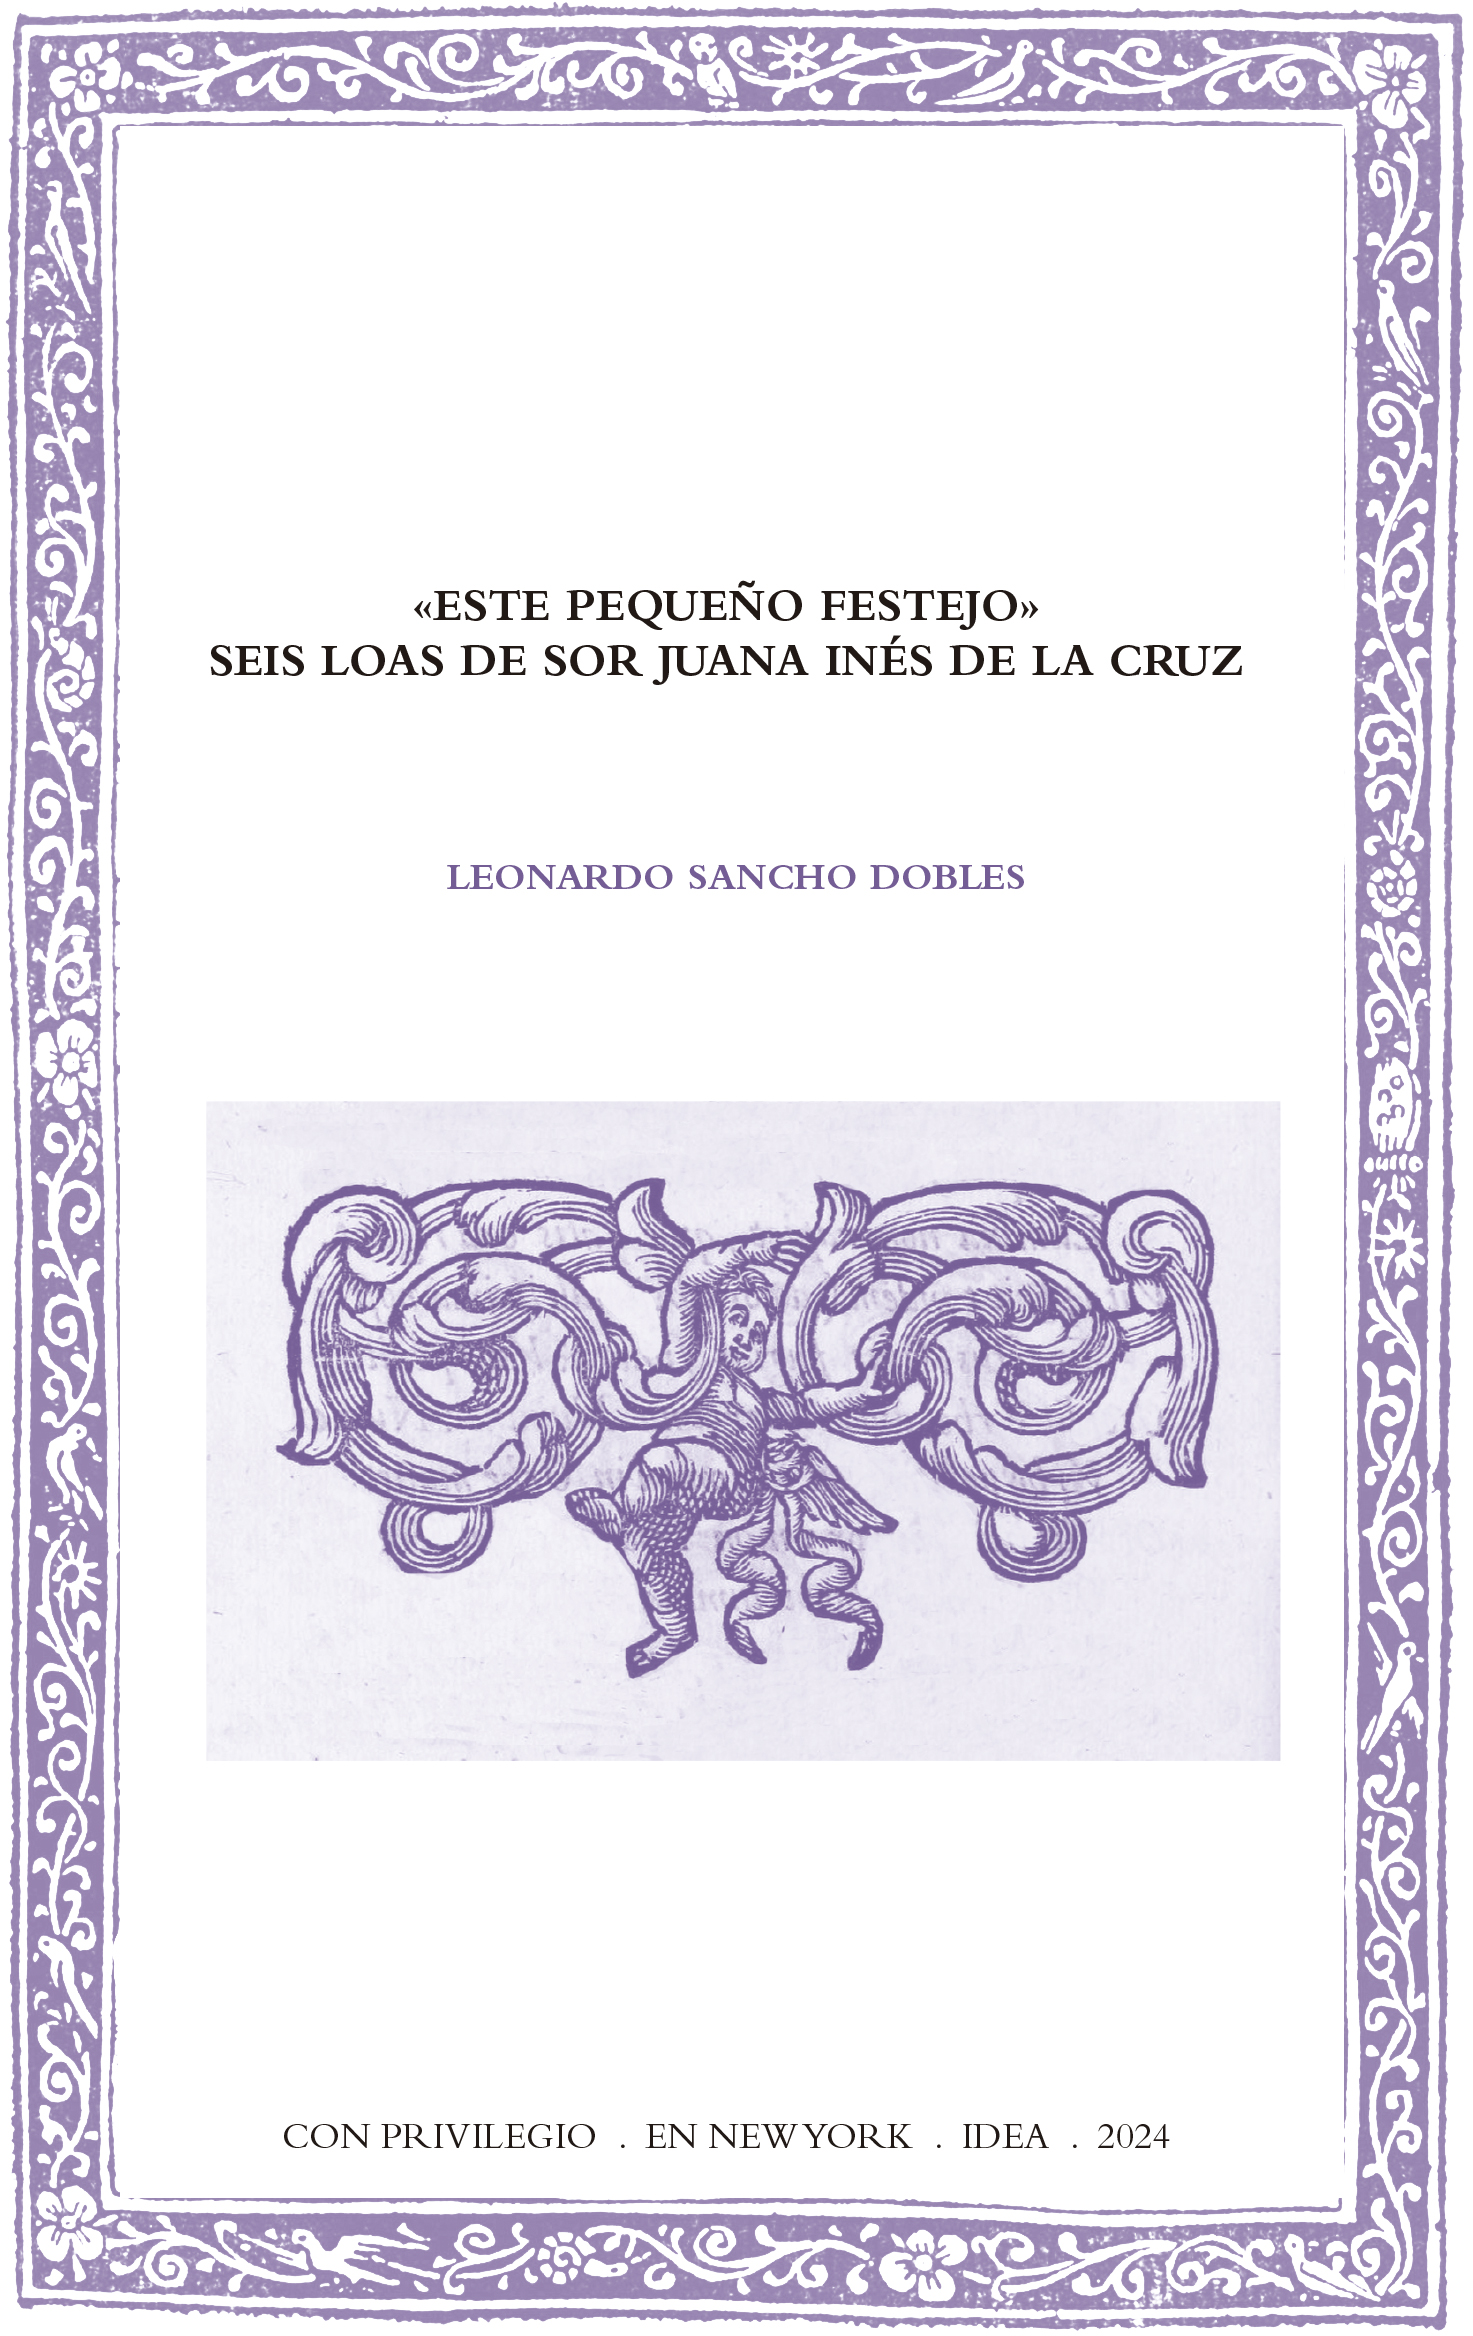 Batihoja 94. "Este pequeño festejo". Six loas by sor Juana Inés de la Cruz. 